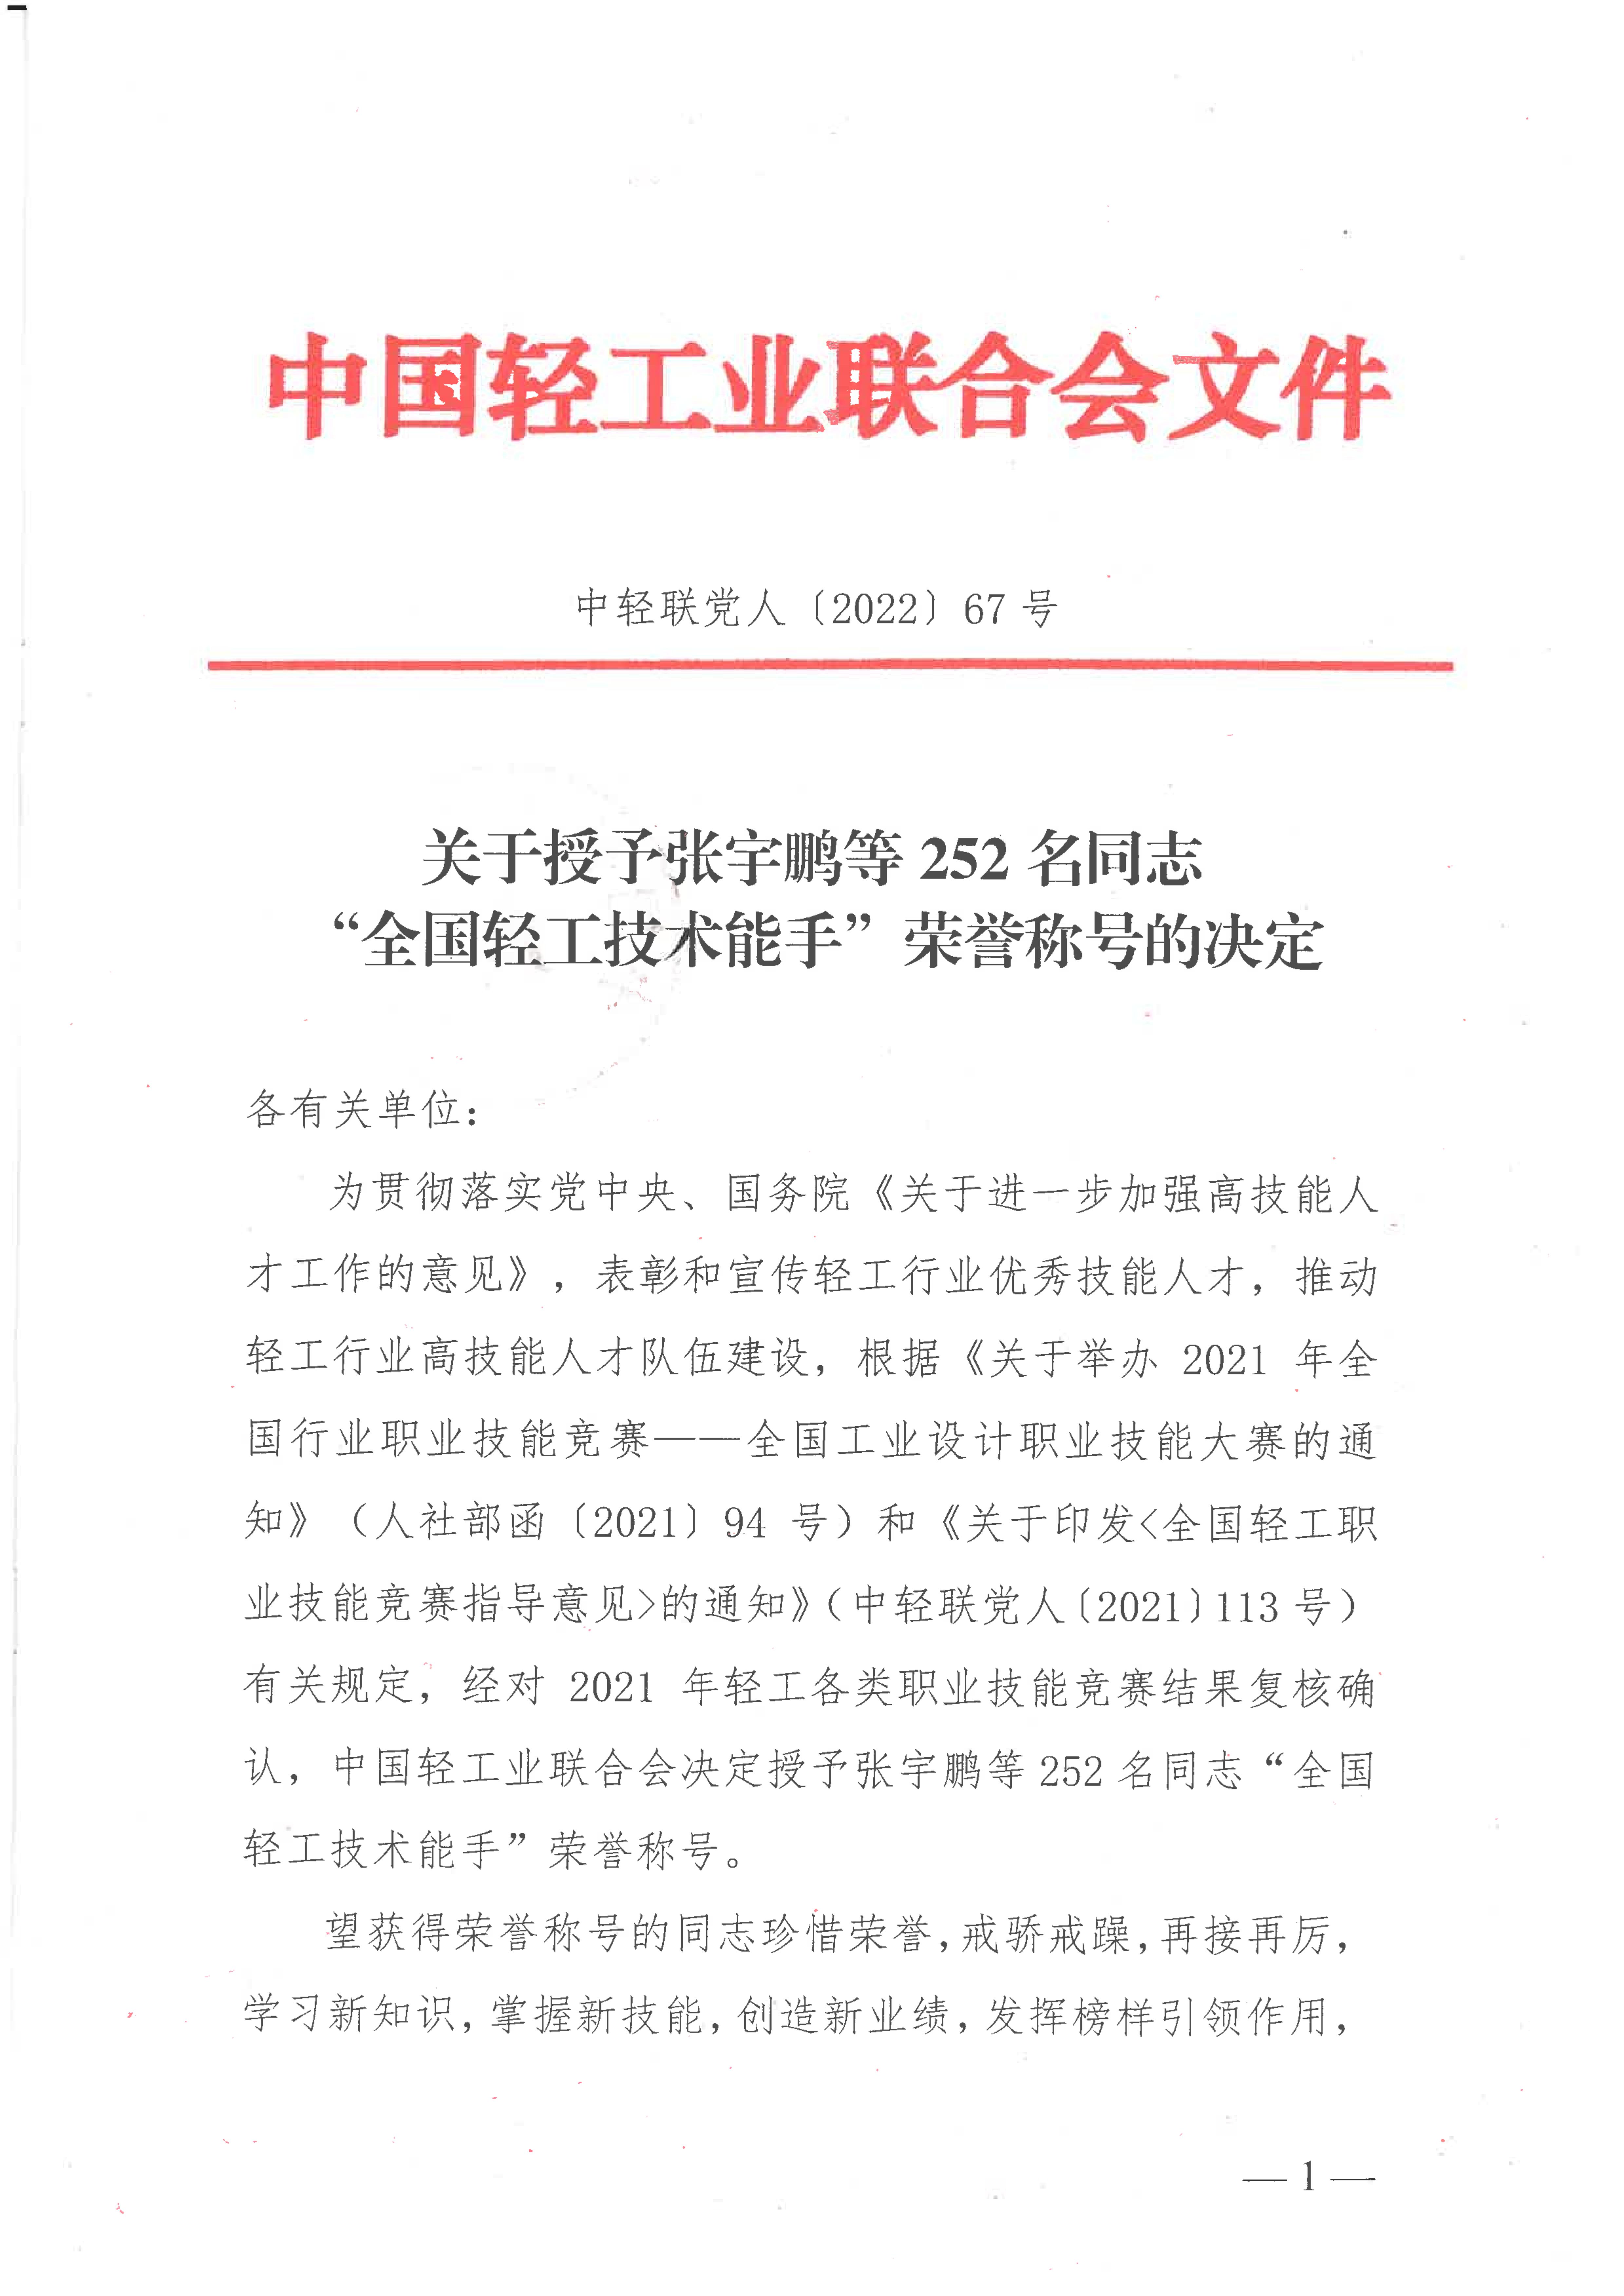 关于授予张宇鹏等252名同志“全国轻工技术能手”荣誉称号的决定_00.jpg